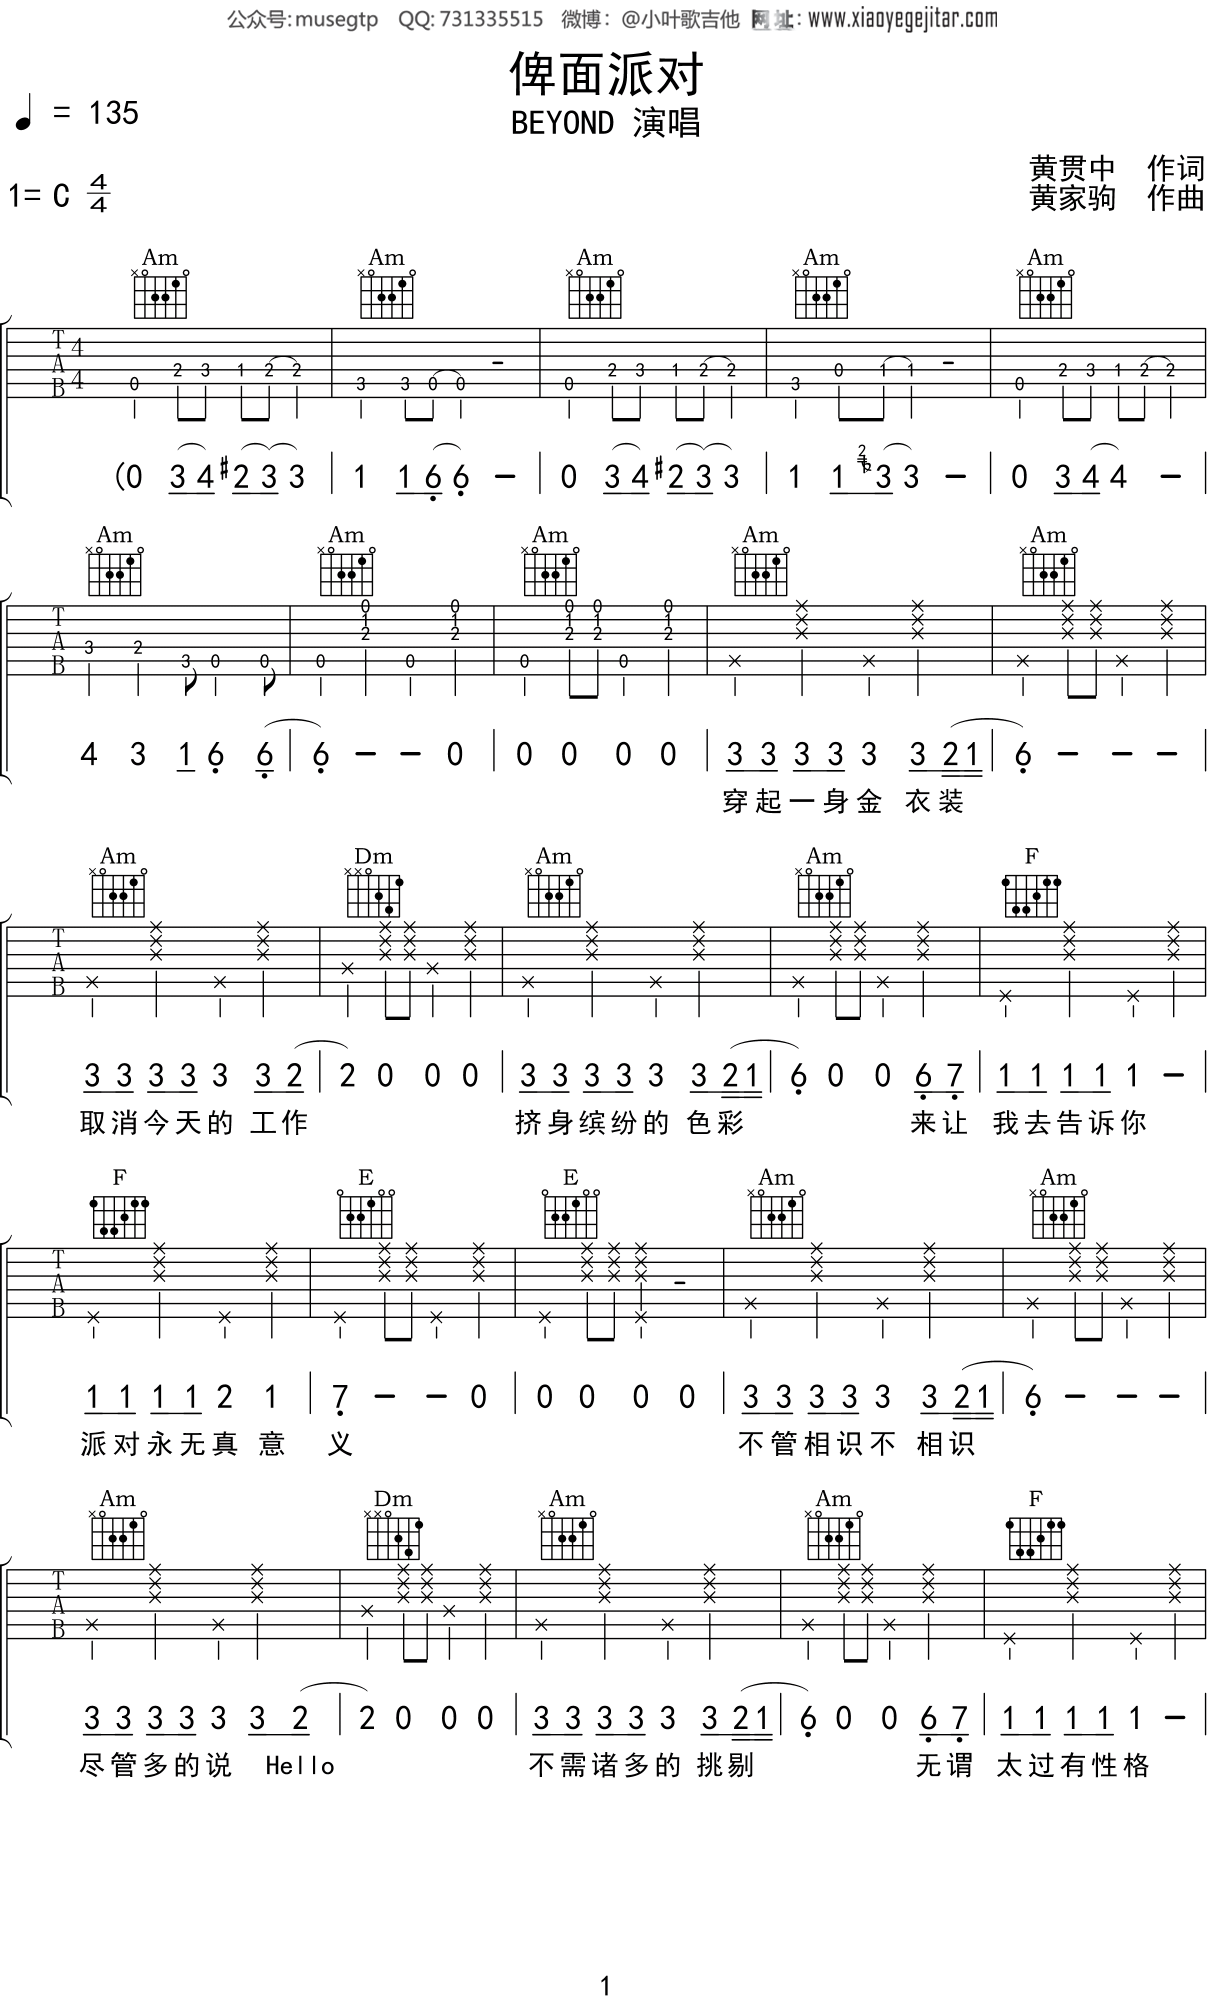 俾面派对(91年演唱会版) 吉他谱-虫虫吉他谱免费下载